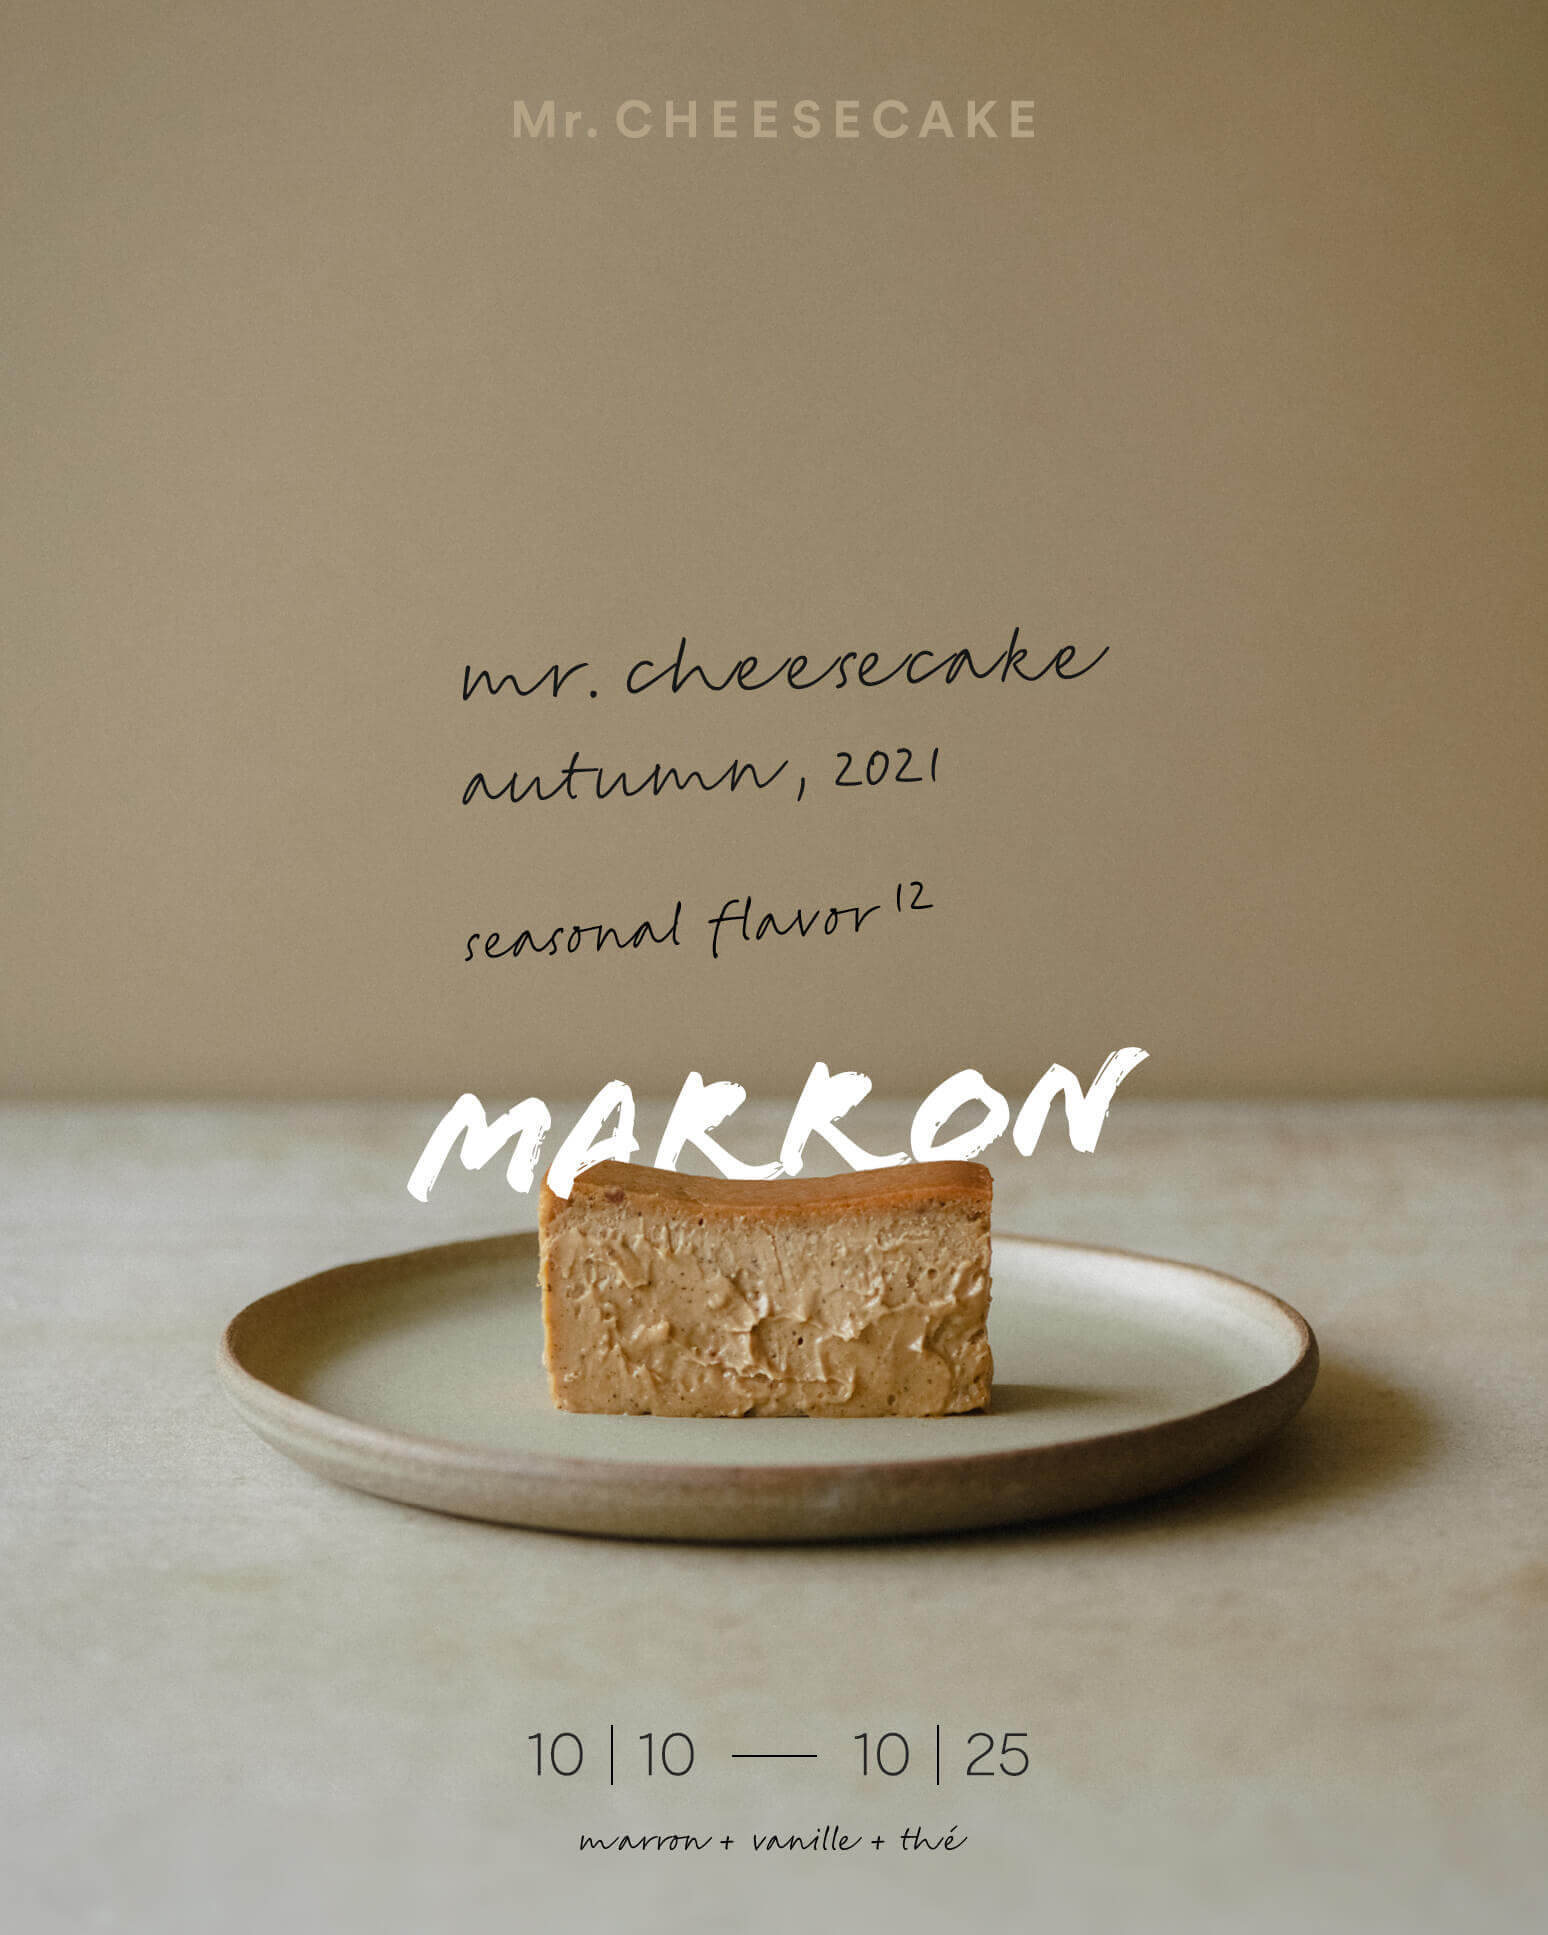 「Mr.CHEESECAKE marron（ミスターチーズケーキ マロン）」が買えるのはいつ？